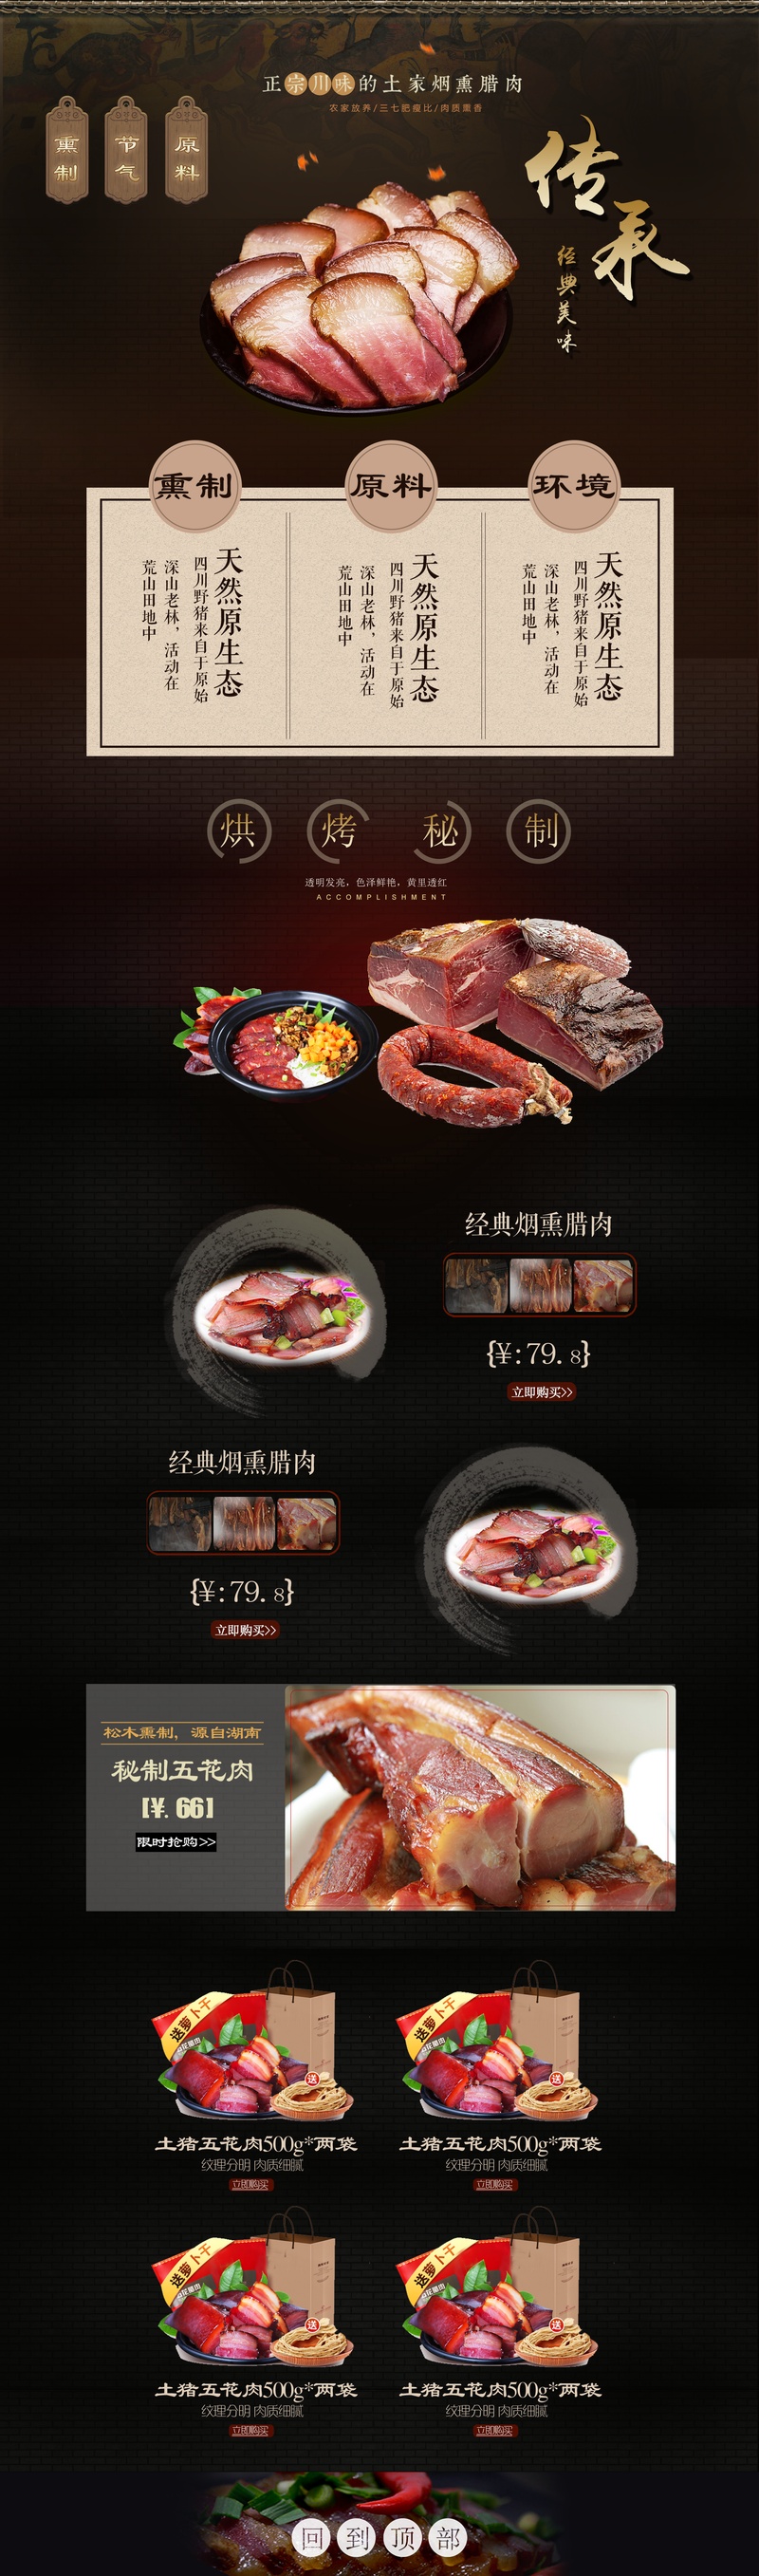 清新简约风肉类制品店铺首页PSD模版